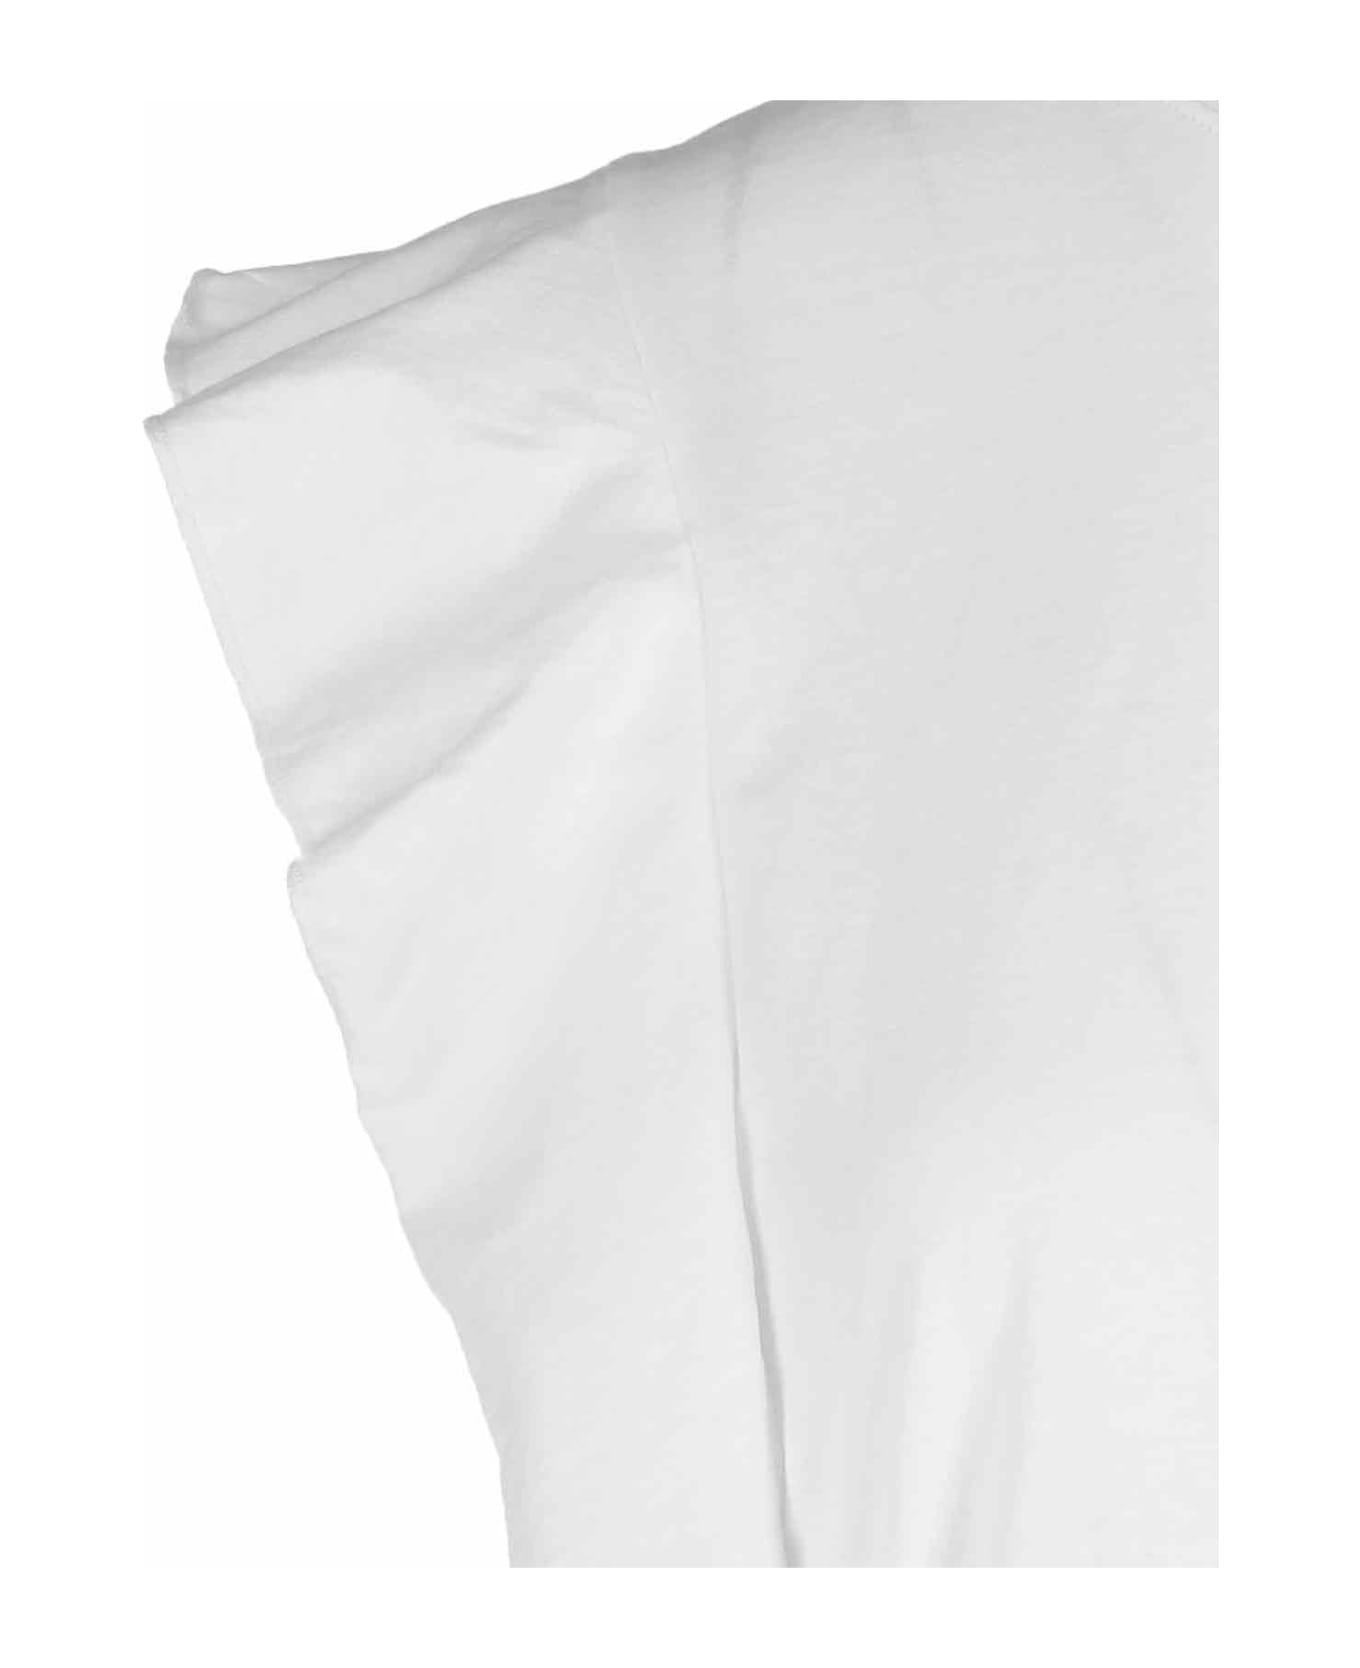 Chloé Ruffled T-shirt - White タンクトップ